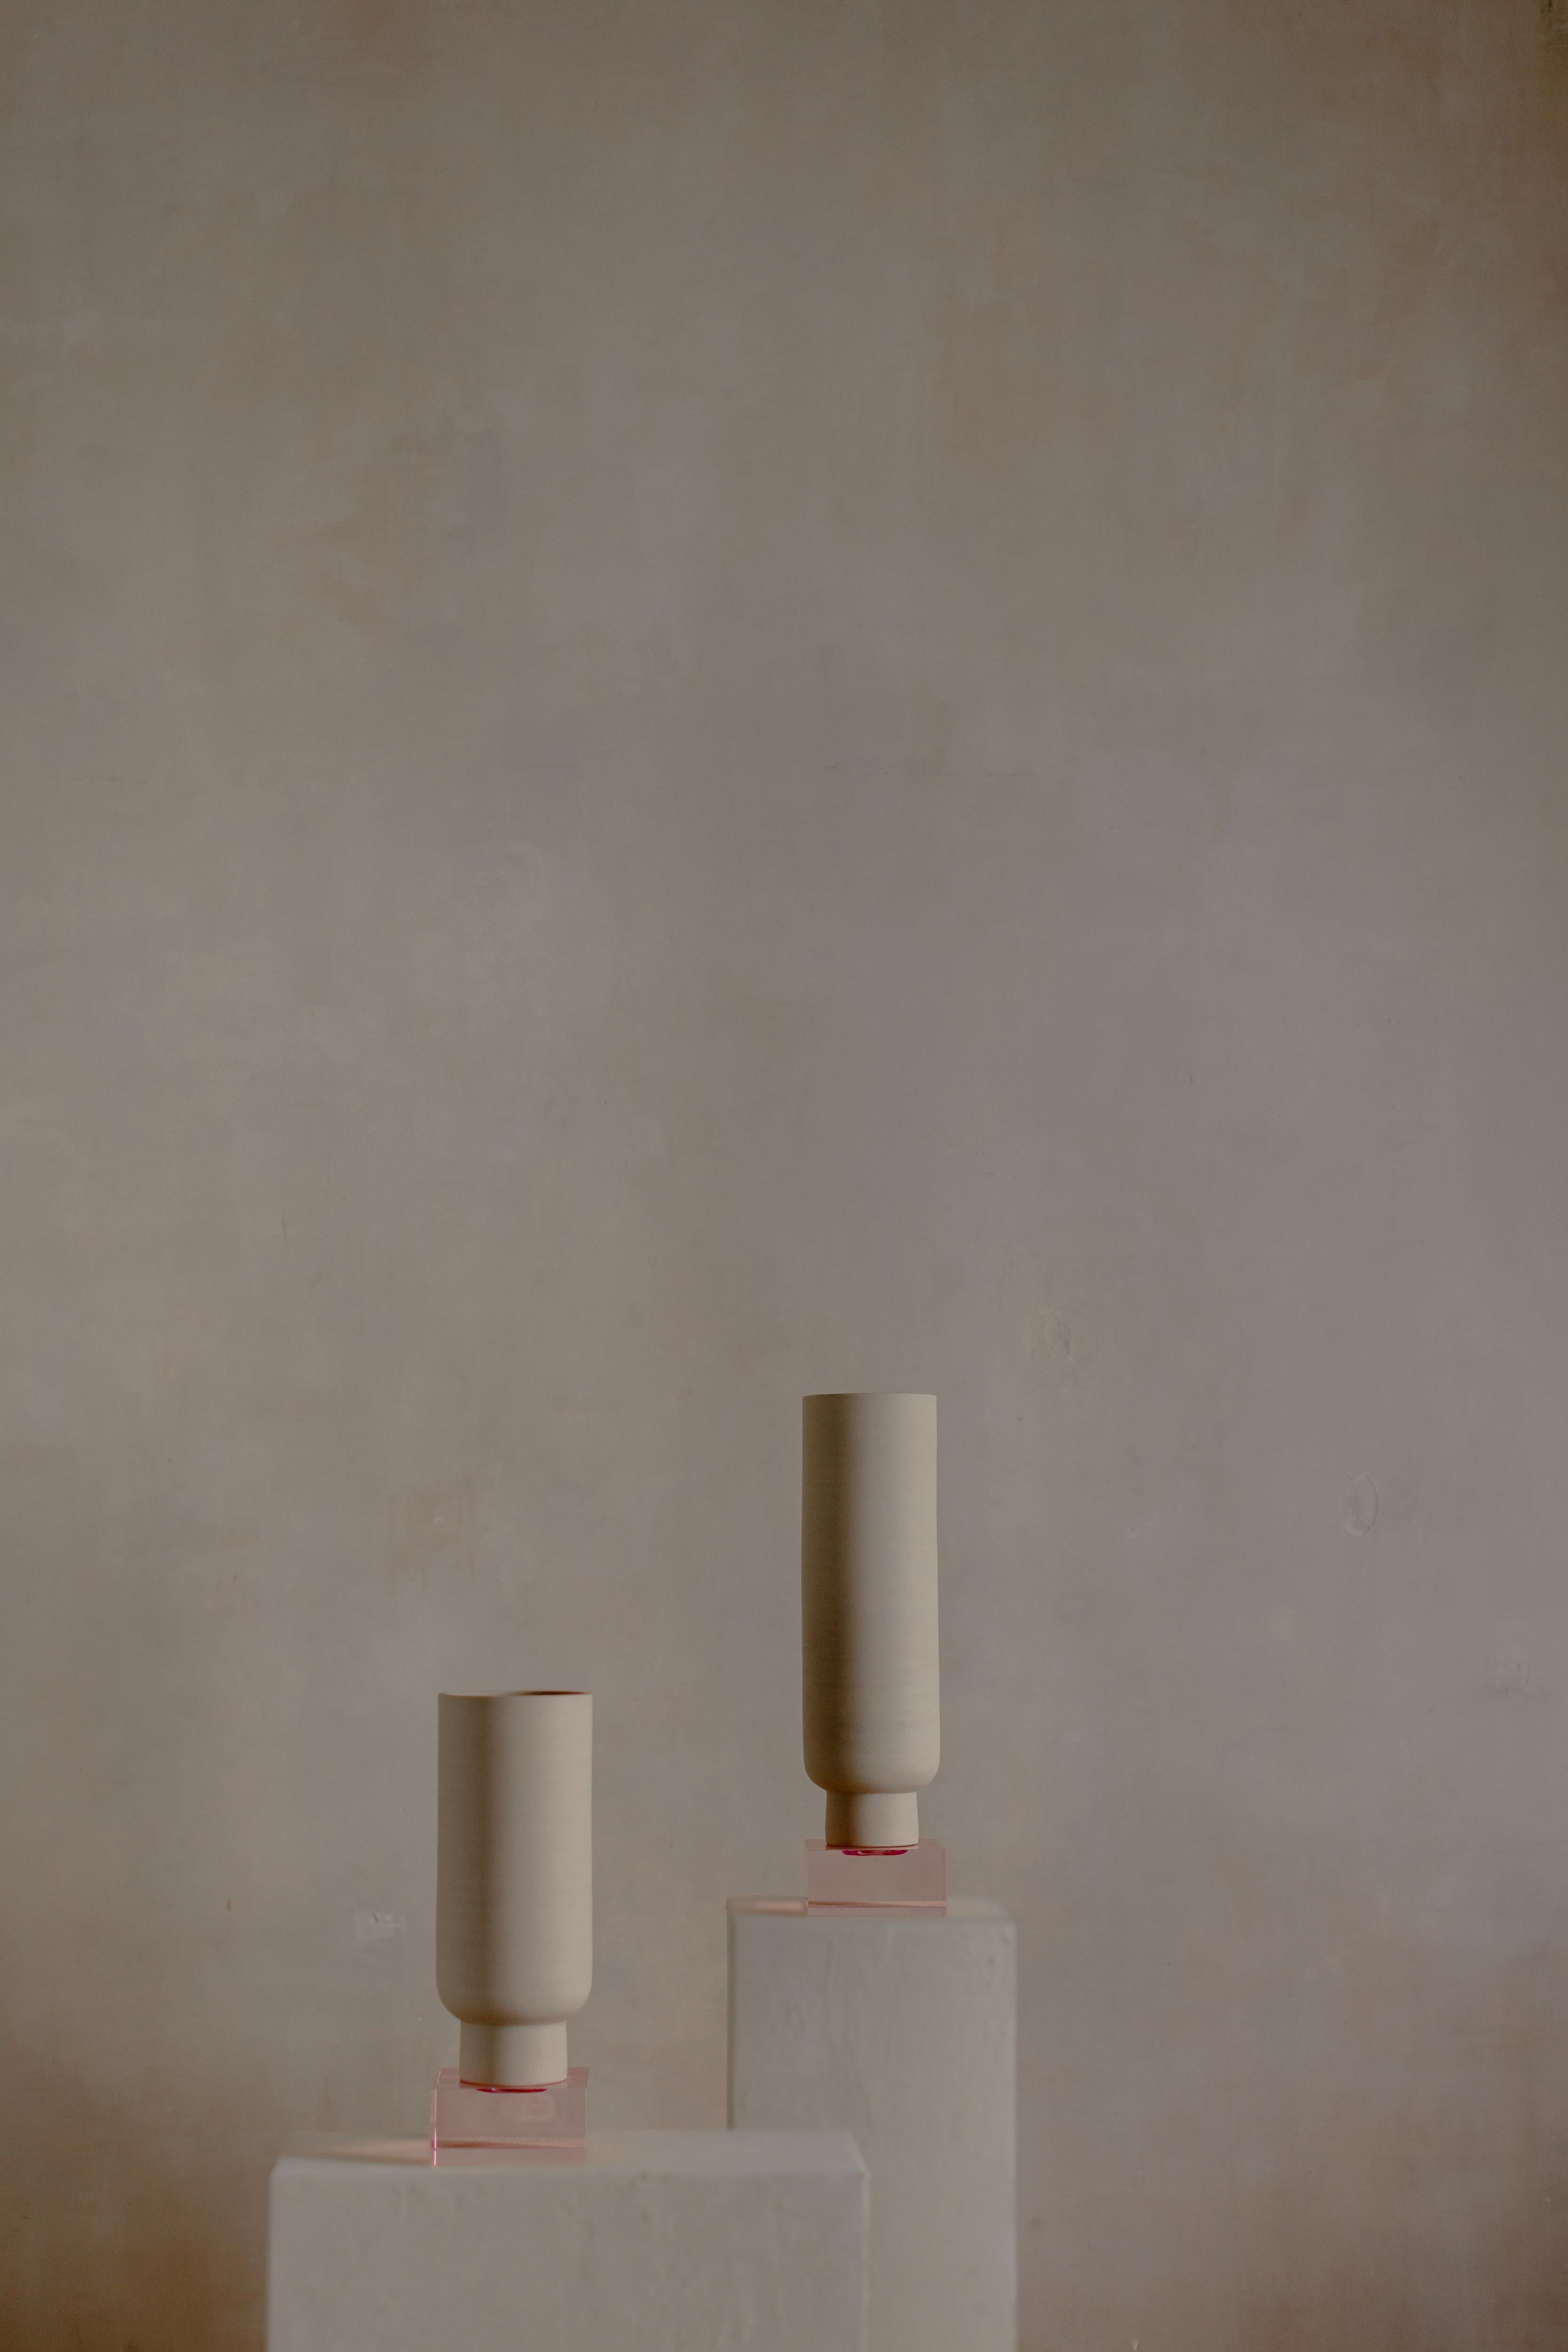 Ensemble de 2 récipients roses Peana Modèle 3 par Eter Design
Pièces uniques.
Dimensions : Peana Model 3 Large : Ø 15,2 x H 56 cm.
Peana Modèle 3 Petit : Ø 15,2 x H 43,3 cm.
Matériaux : Argile.

Durable - Respectueux de l'environnement. Fait à